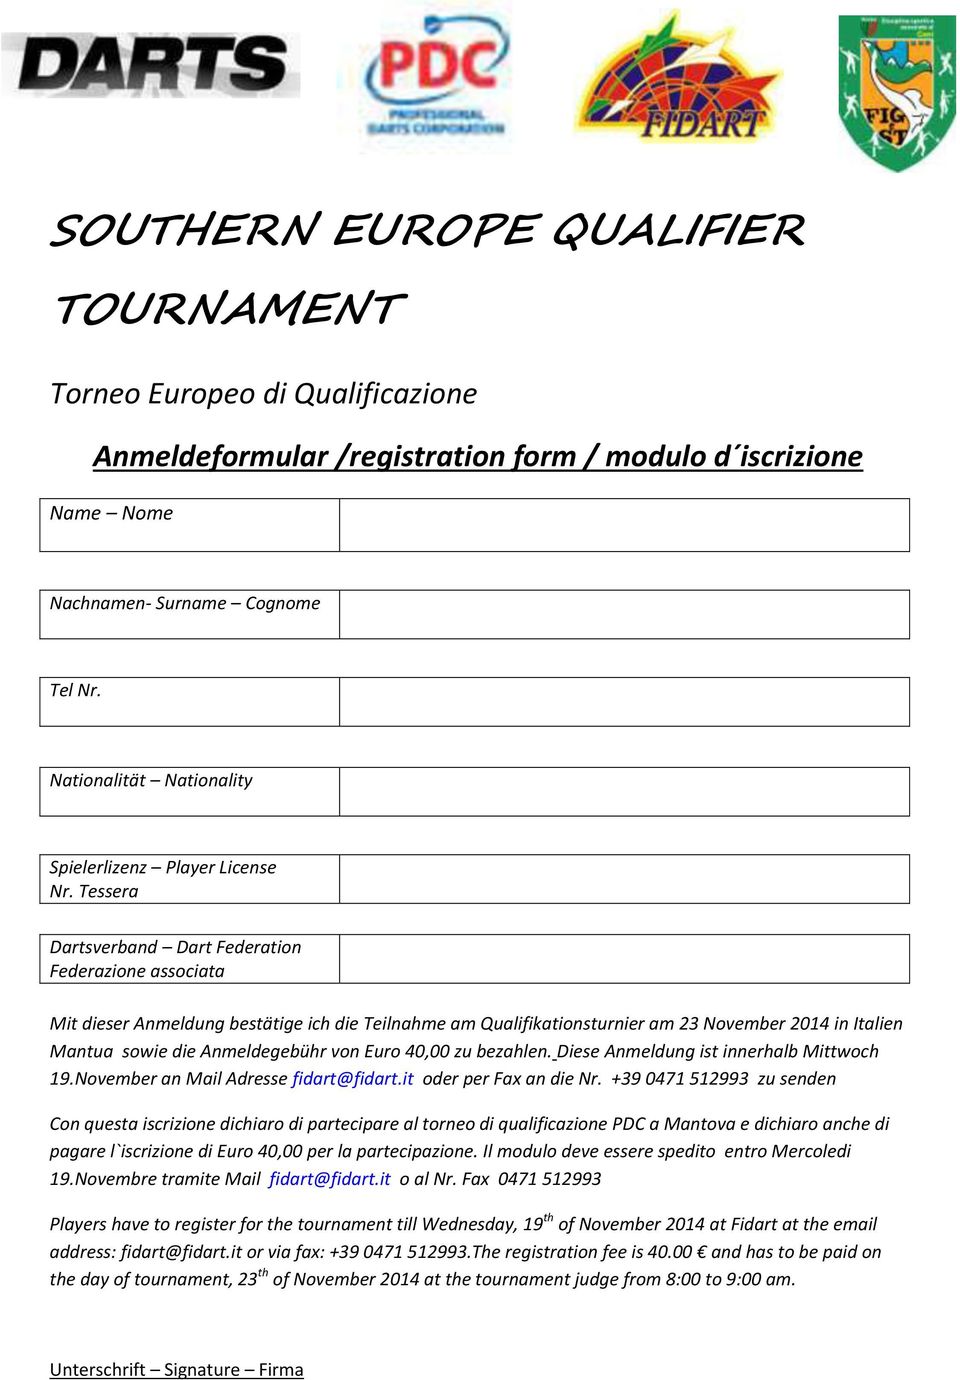 Tessera Dartsverband Dart Federation Federazione associata Mit dieser Anmeldung bestätige ich die Teilnahme am Qualifikationsturnier am 23 November 2014 in Italien Mantua sowie die Anmeldegebühr von